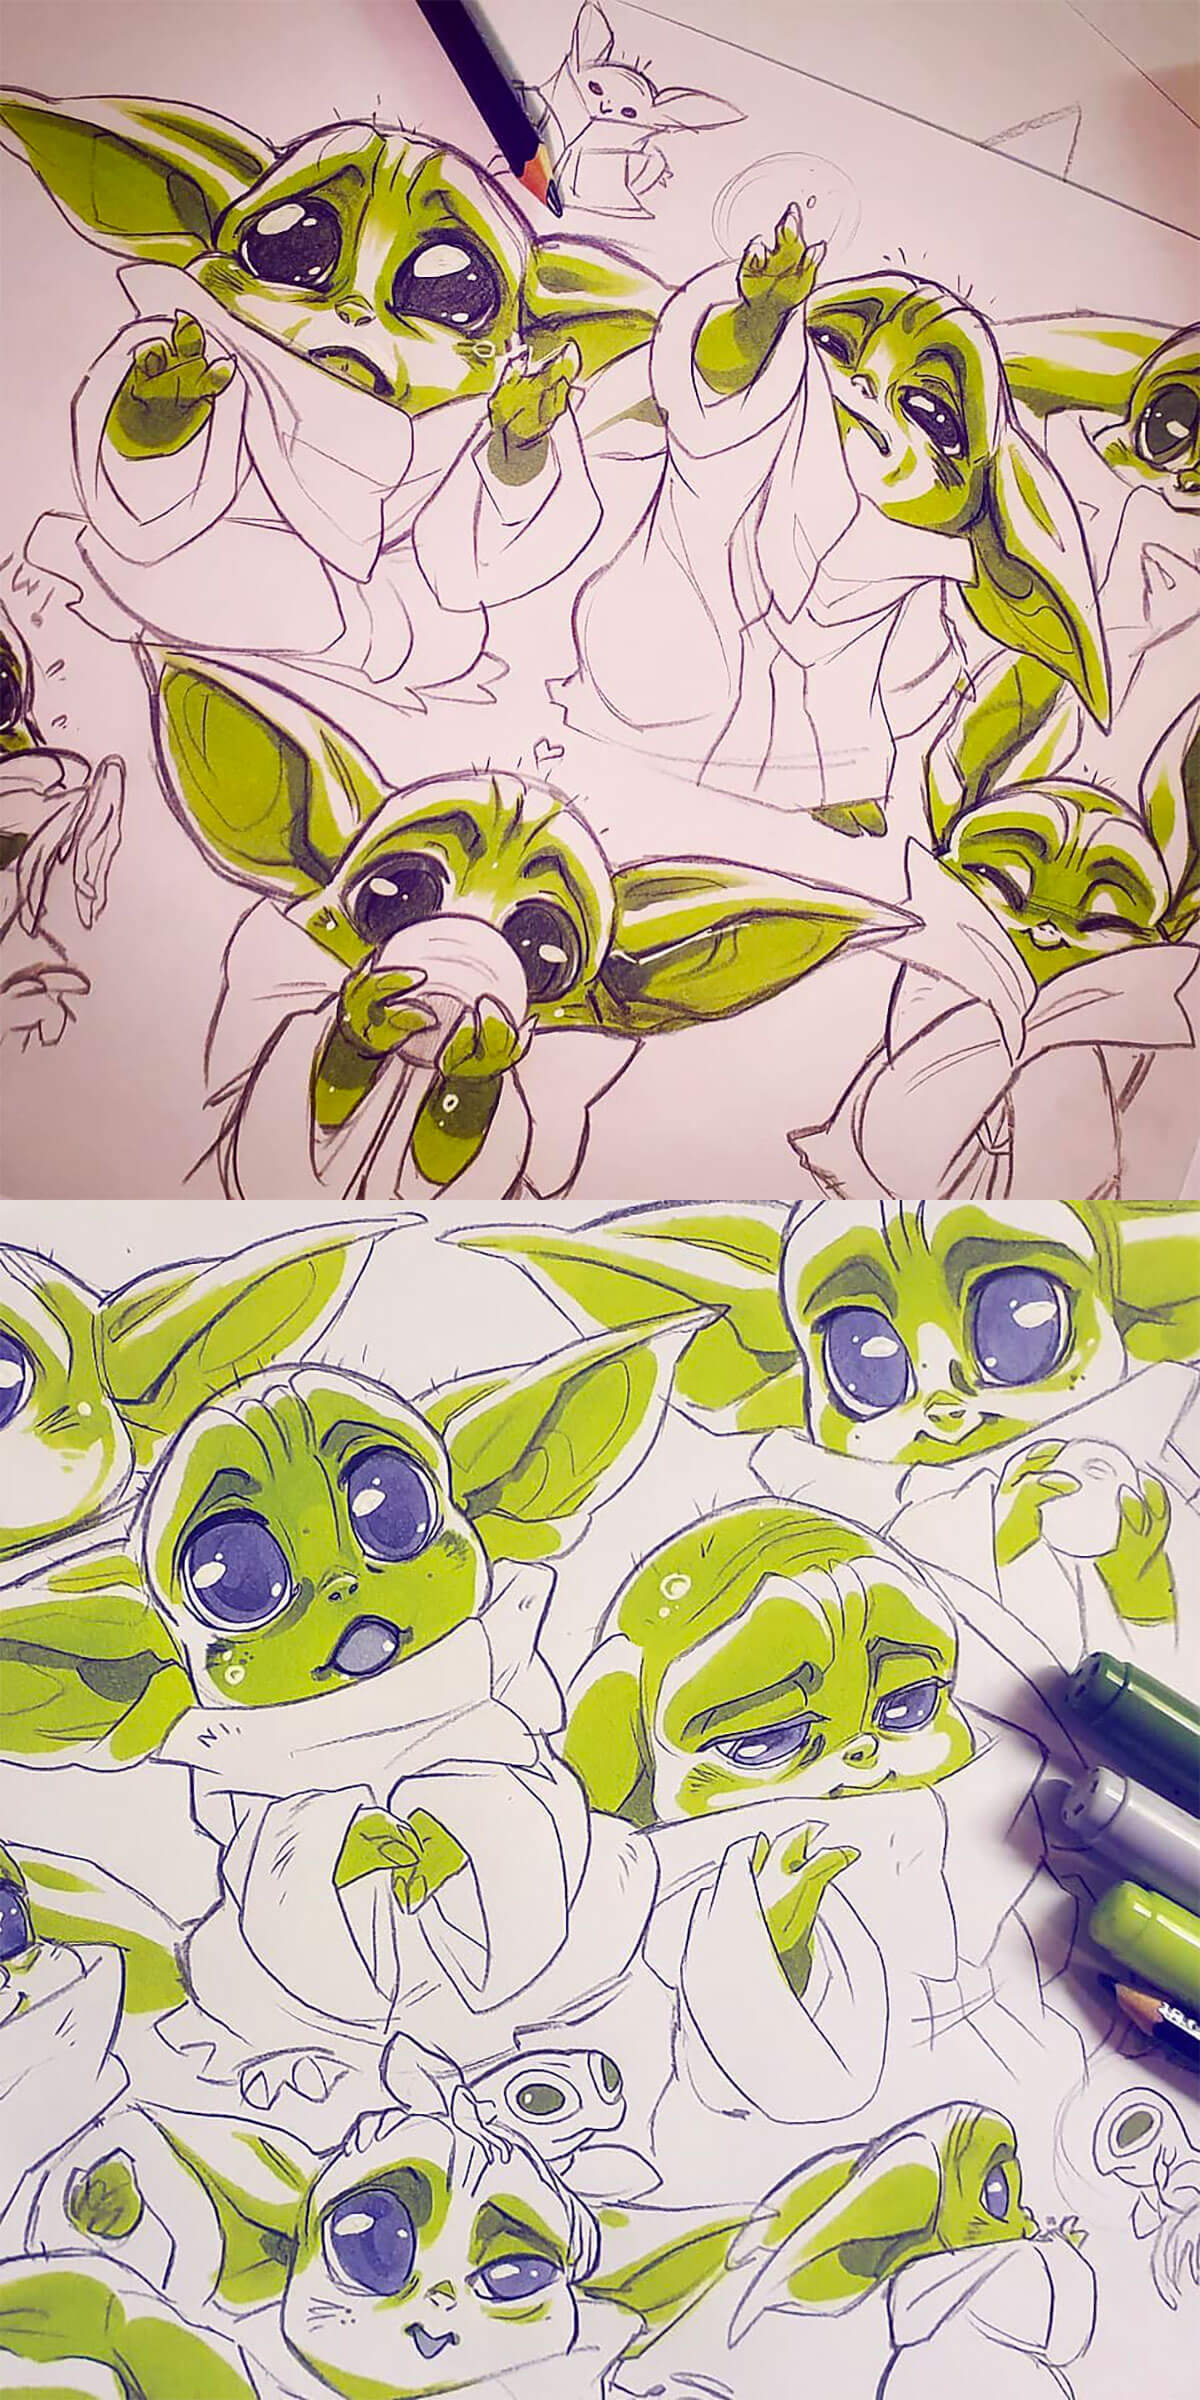 Baby Yoda Fan Art by Evana